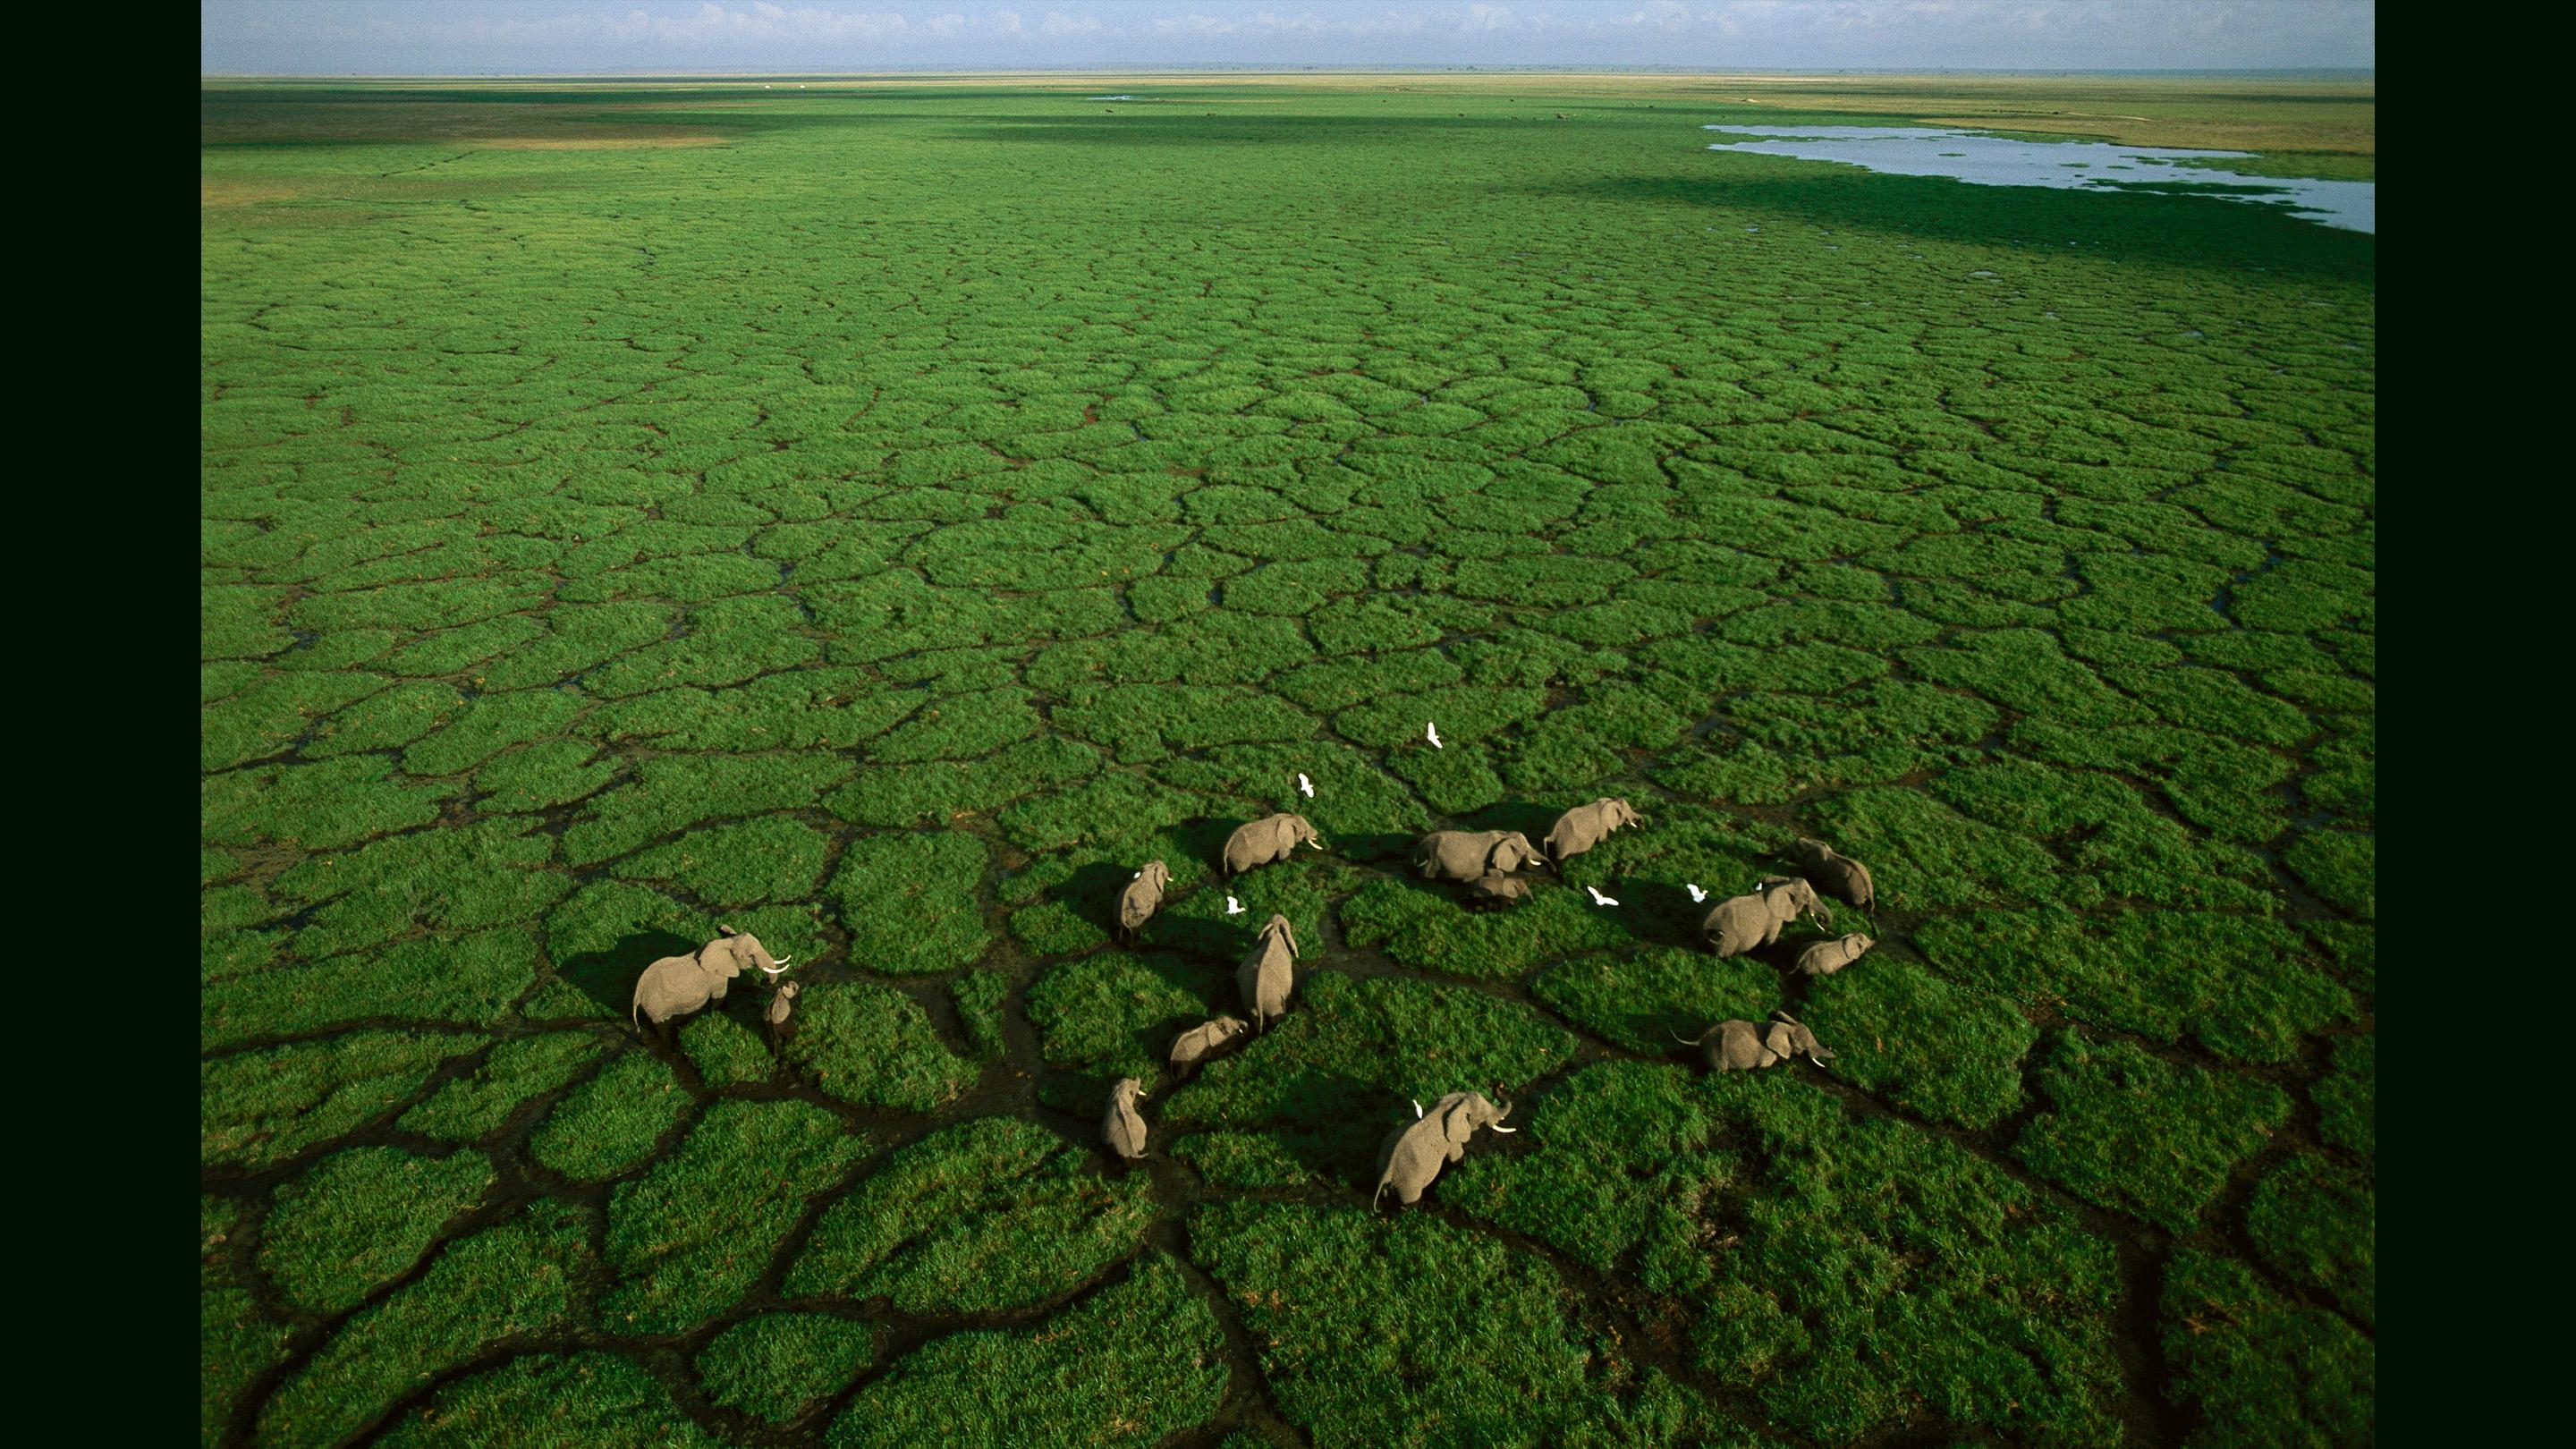 アフリカの写真を 空飛ぶデッキチェアから撮る | ジョージ・スタインメッツ